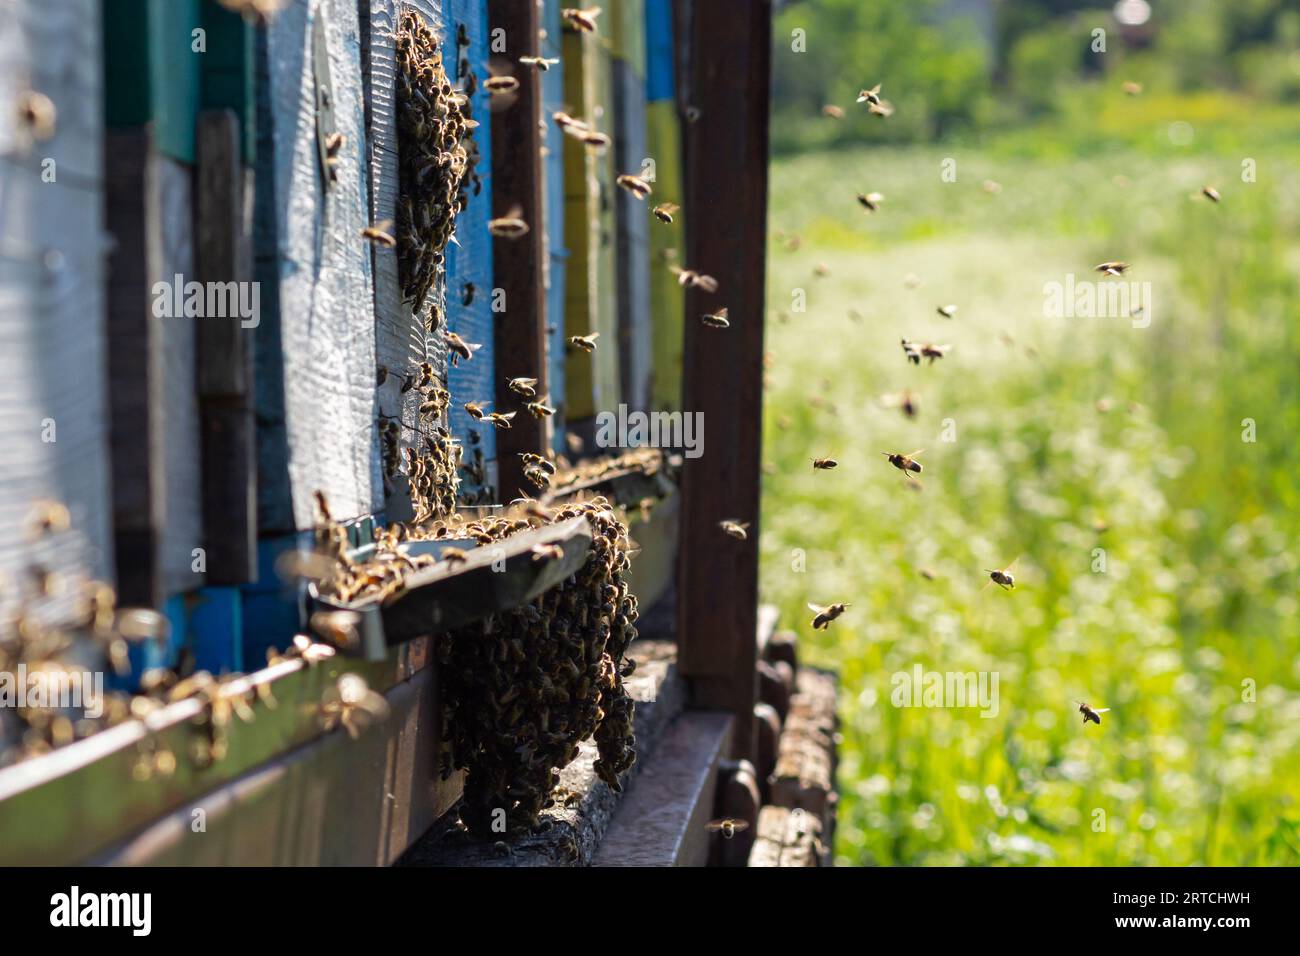 Muchas abejas regresan a la colmena de abejas y entran en la colmena con el néctar floral recogido y el polen de flores. Enjambre de abejas recolectando néctar de las flores. Foto de stock